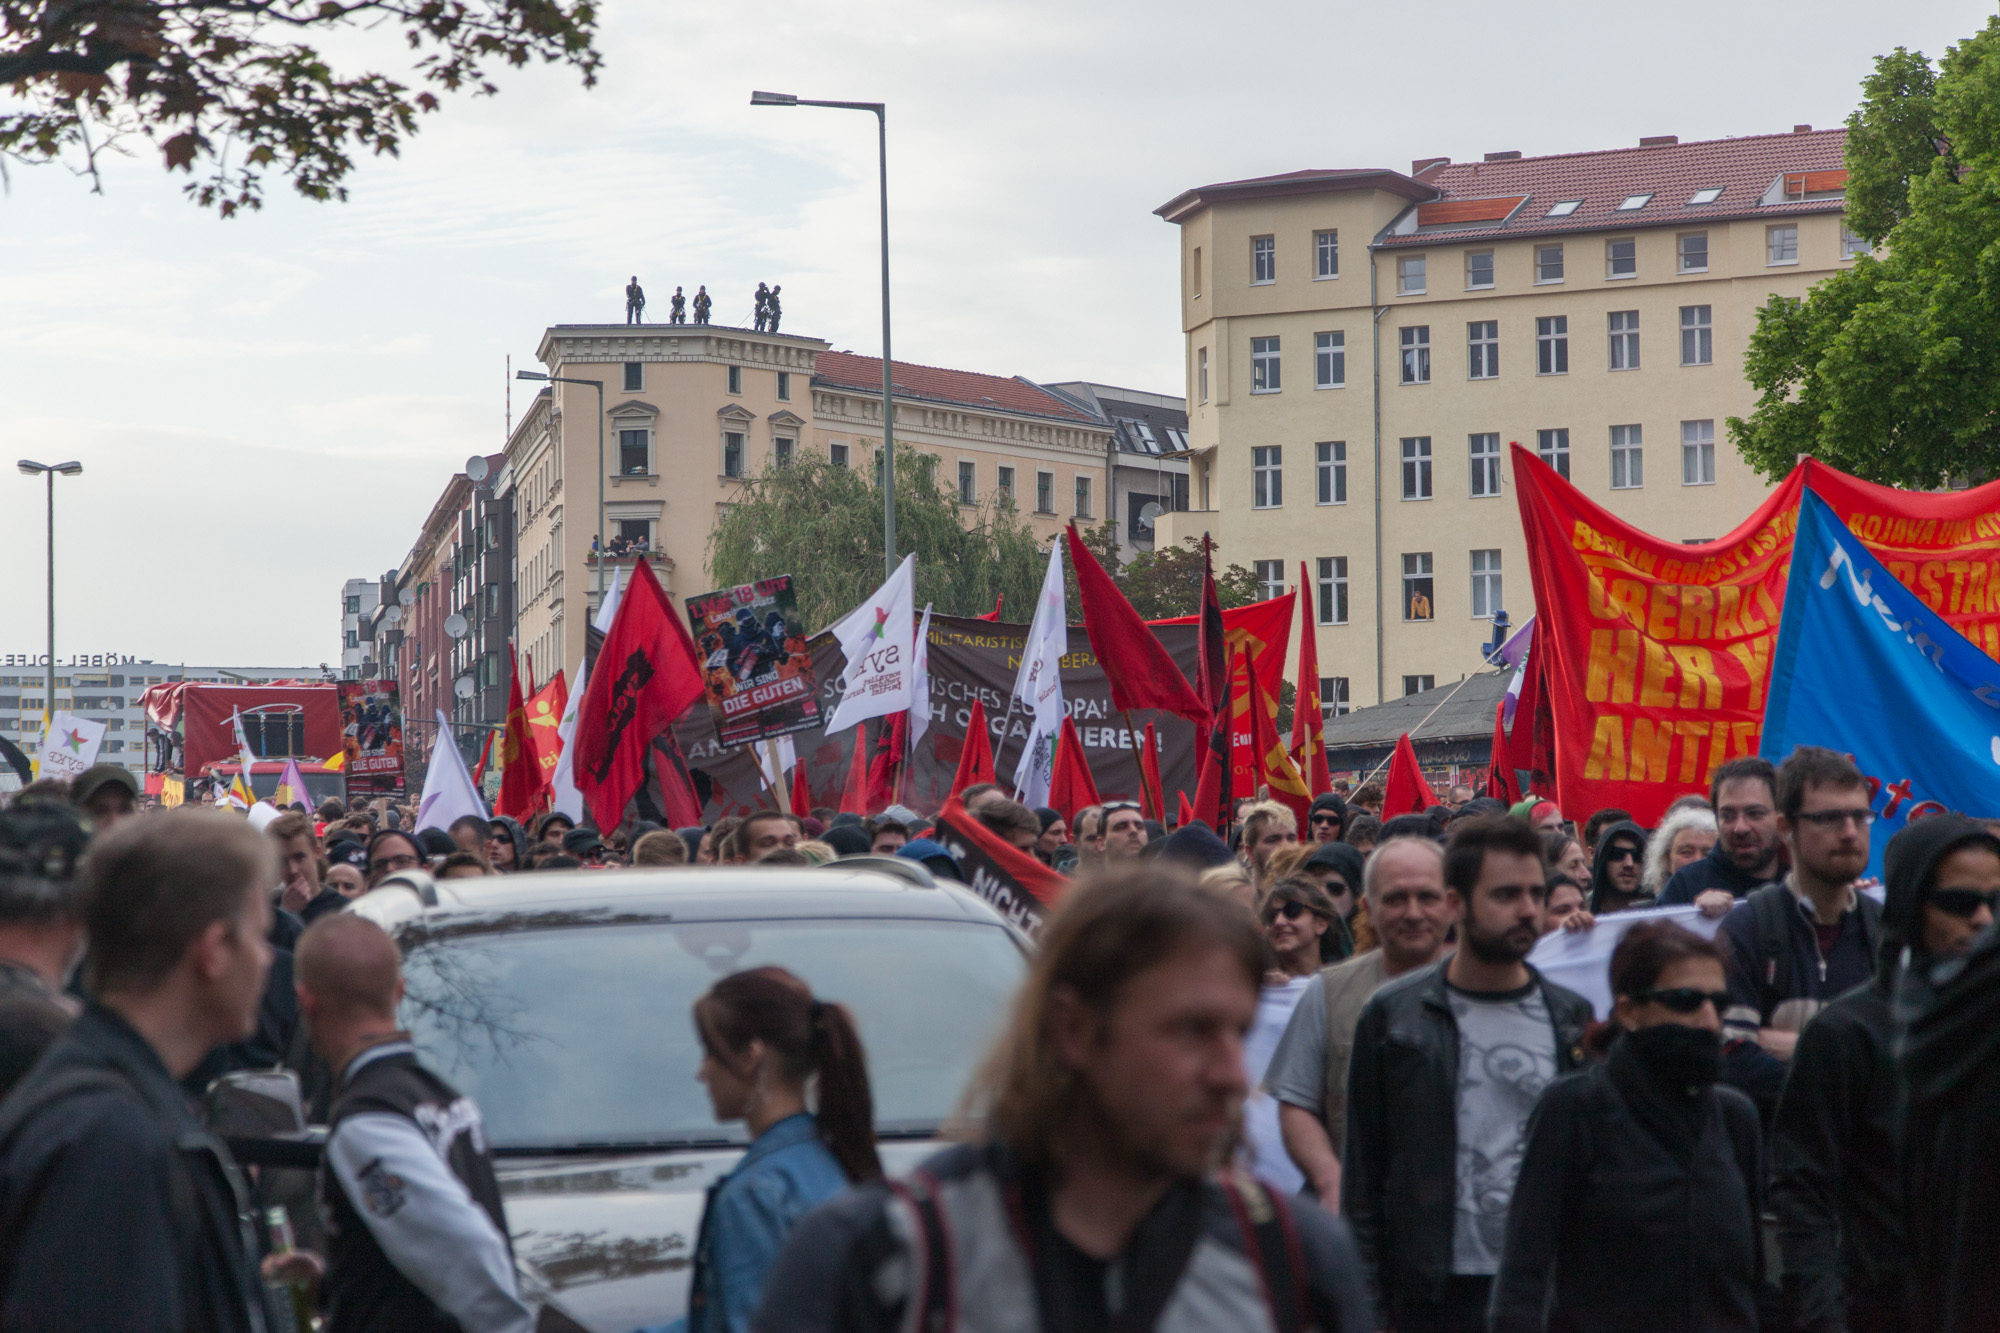 Revolutionäre 1.Mai Demo - Berlin Kreuzberg 2014